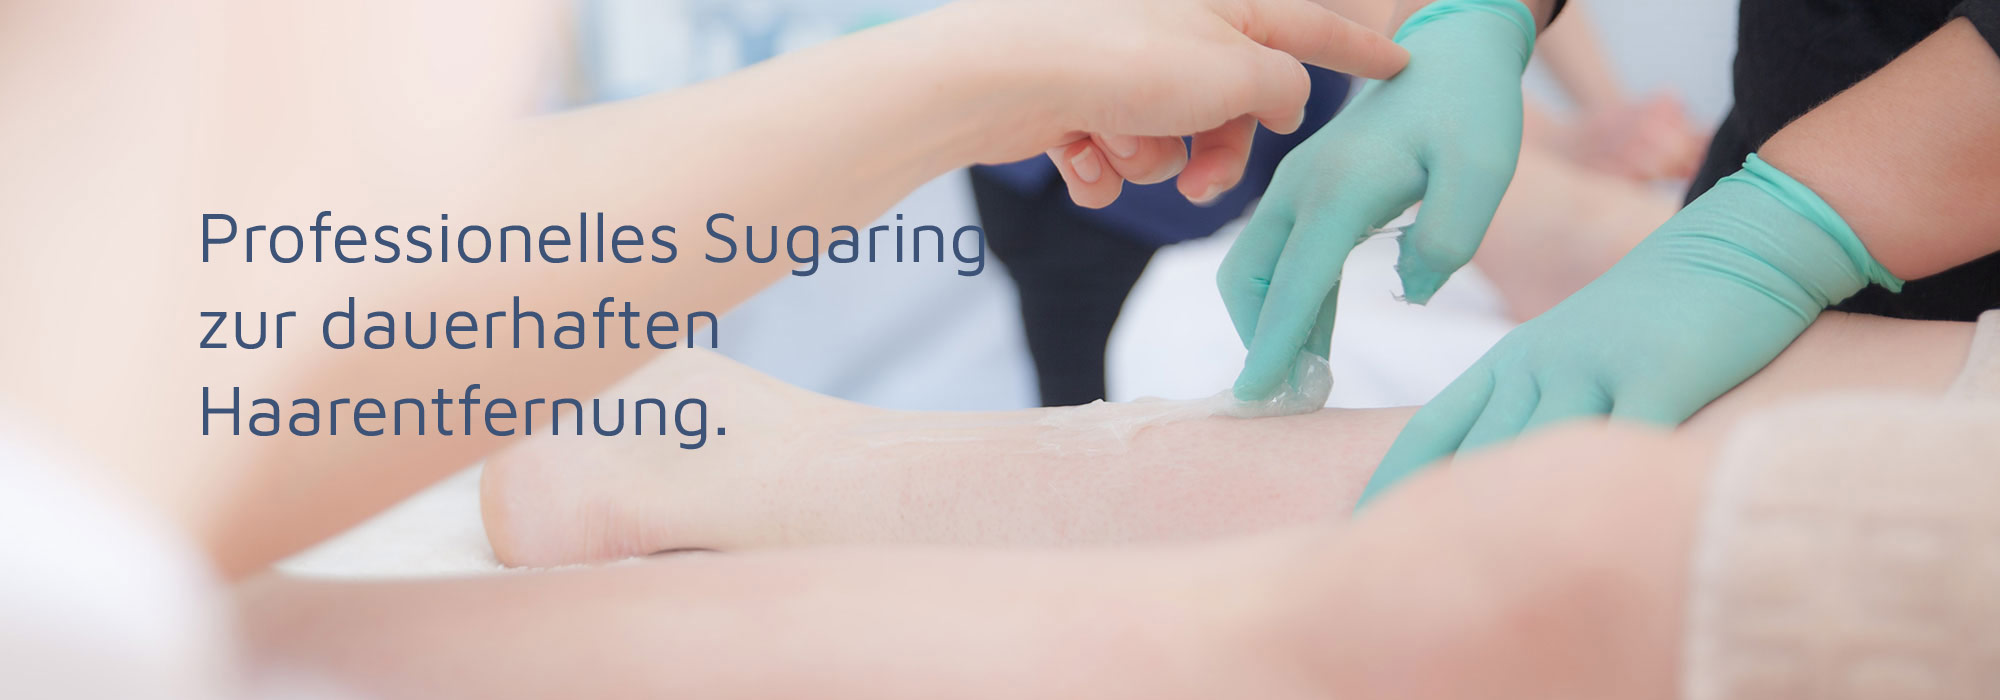 Haarentfernung mit Sugaring